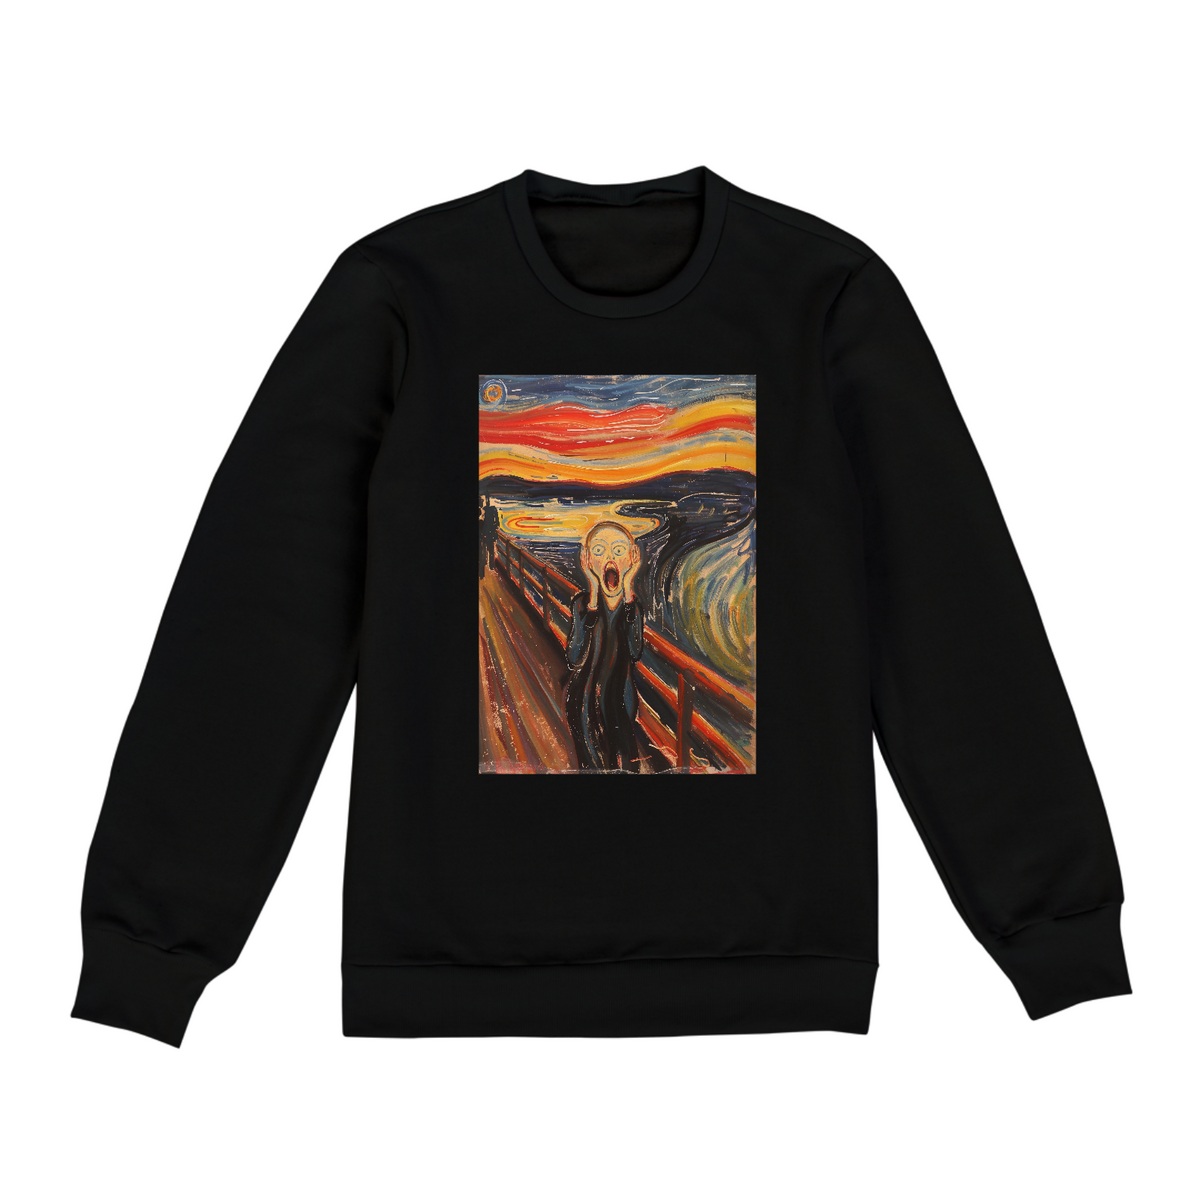 Nome do produto: O Grito - Edvard Munch